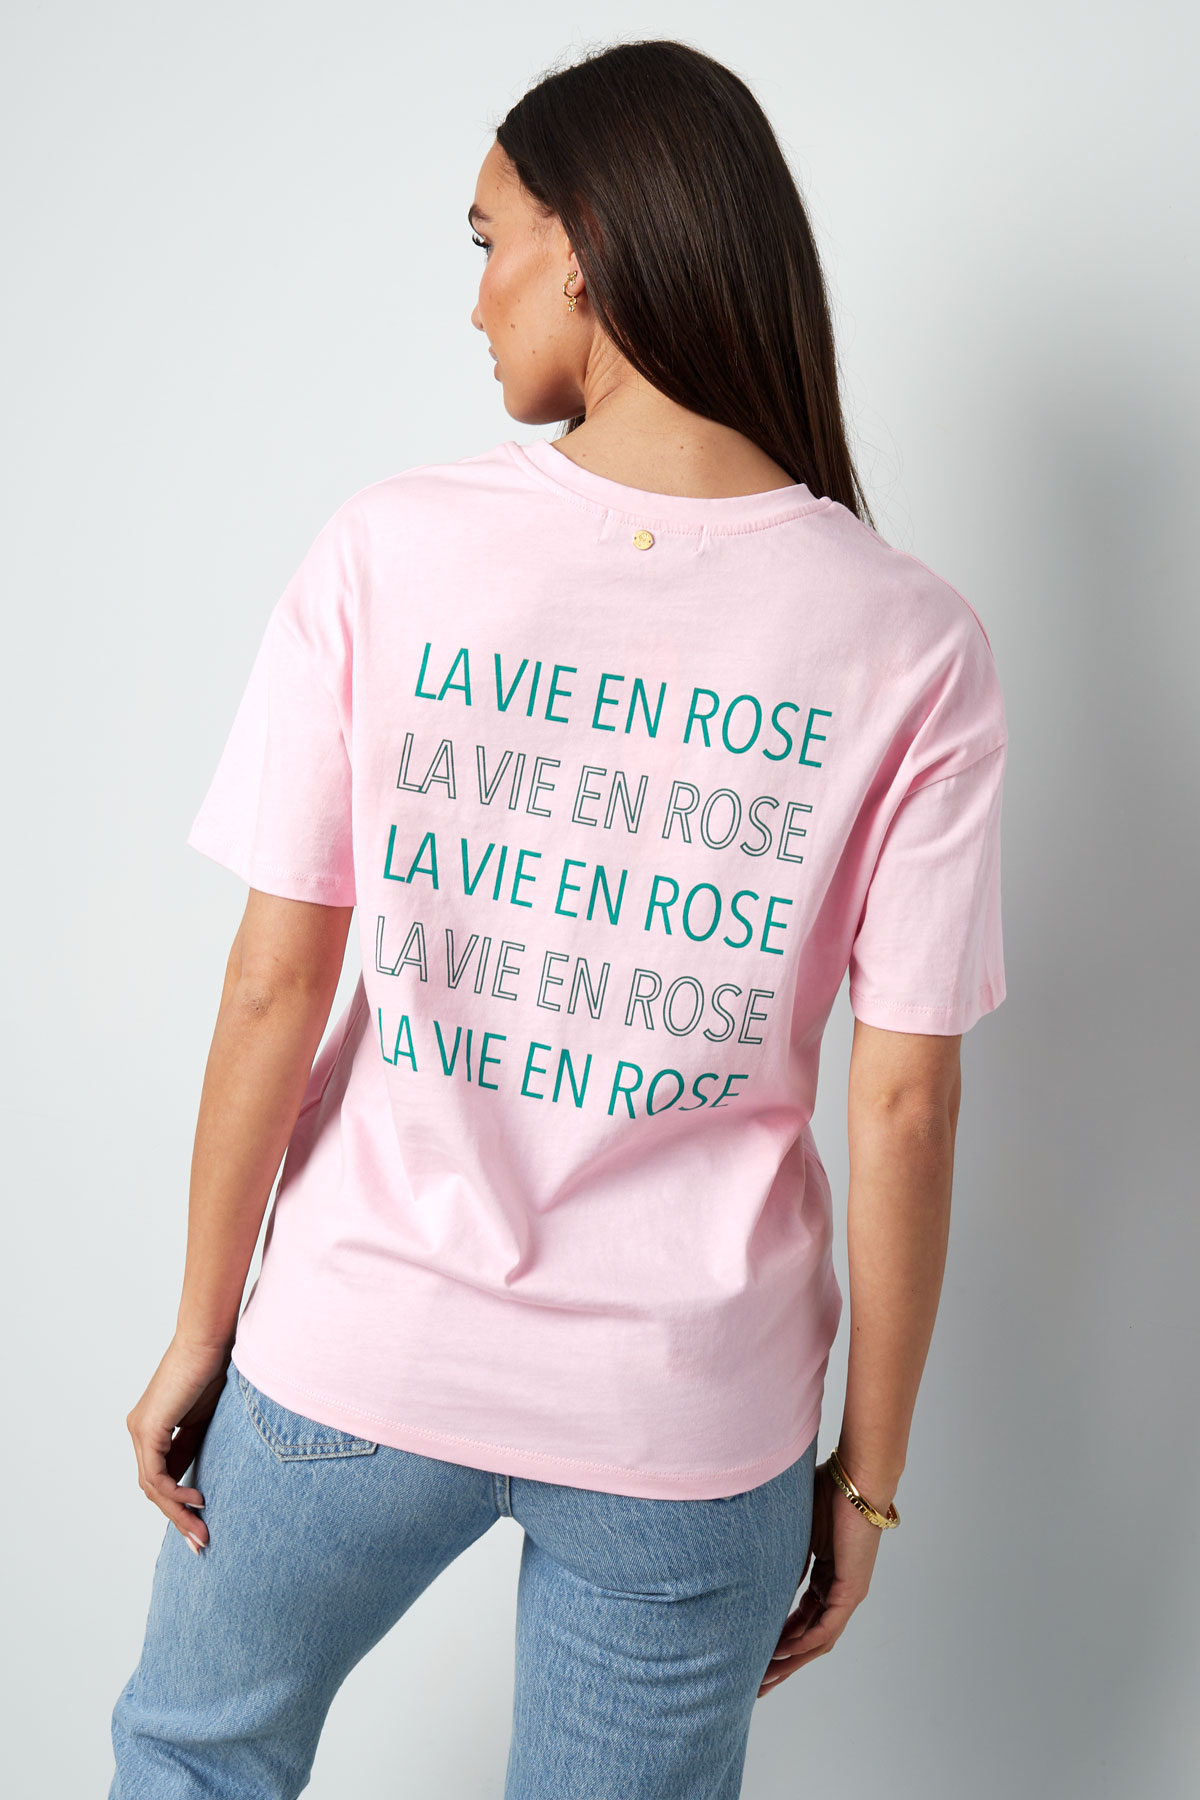 Tişört la vie en rose - koyu gri Resim7